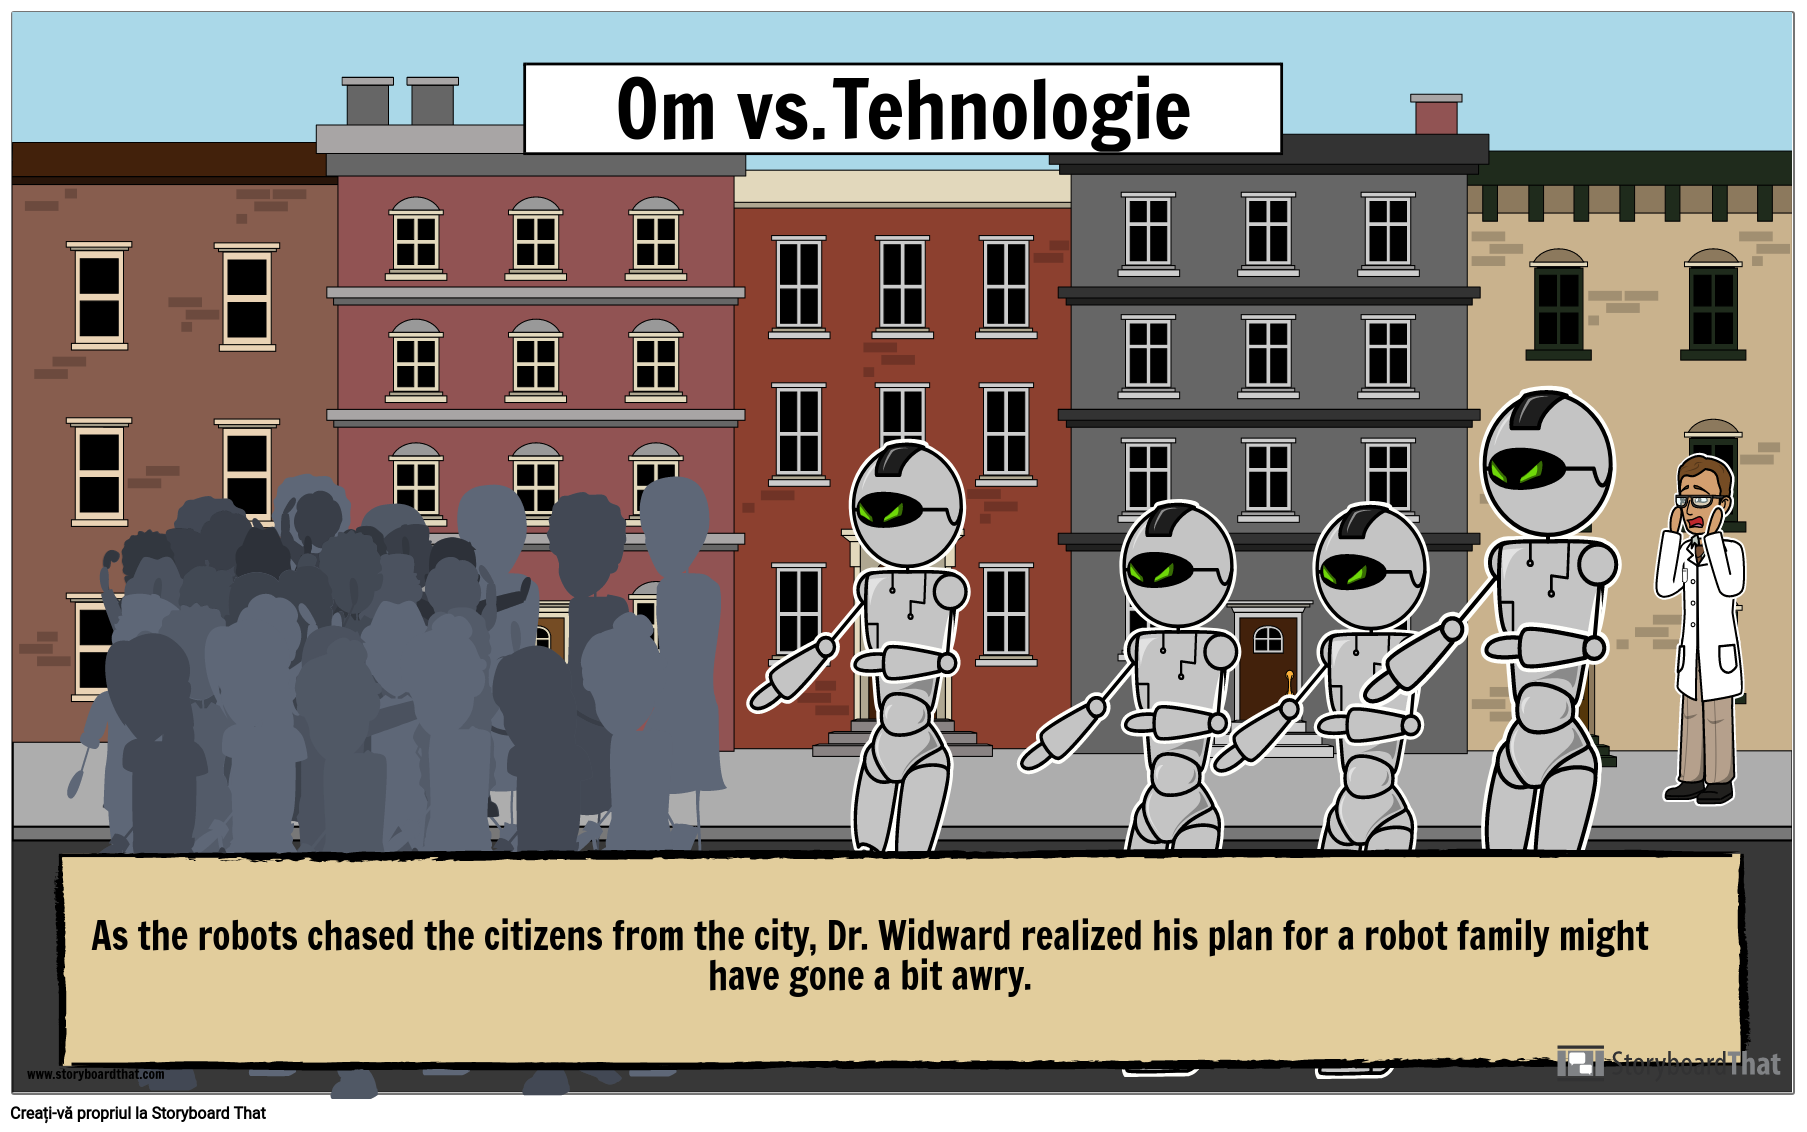 Personaje vs. Tehnologie Poster